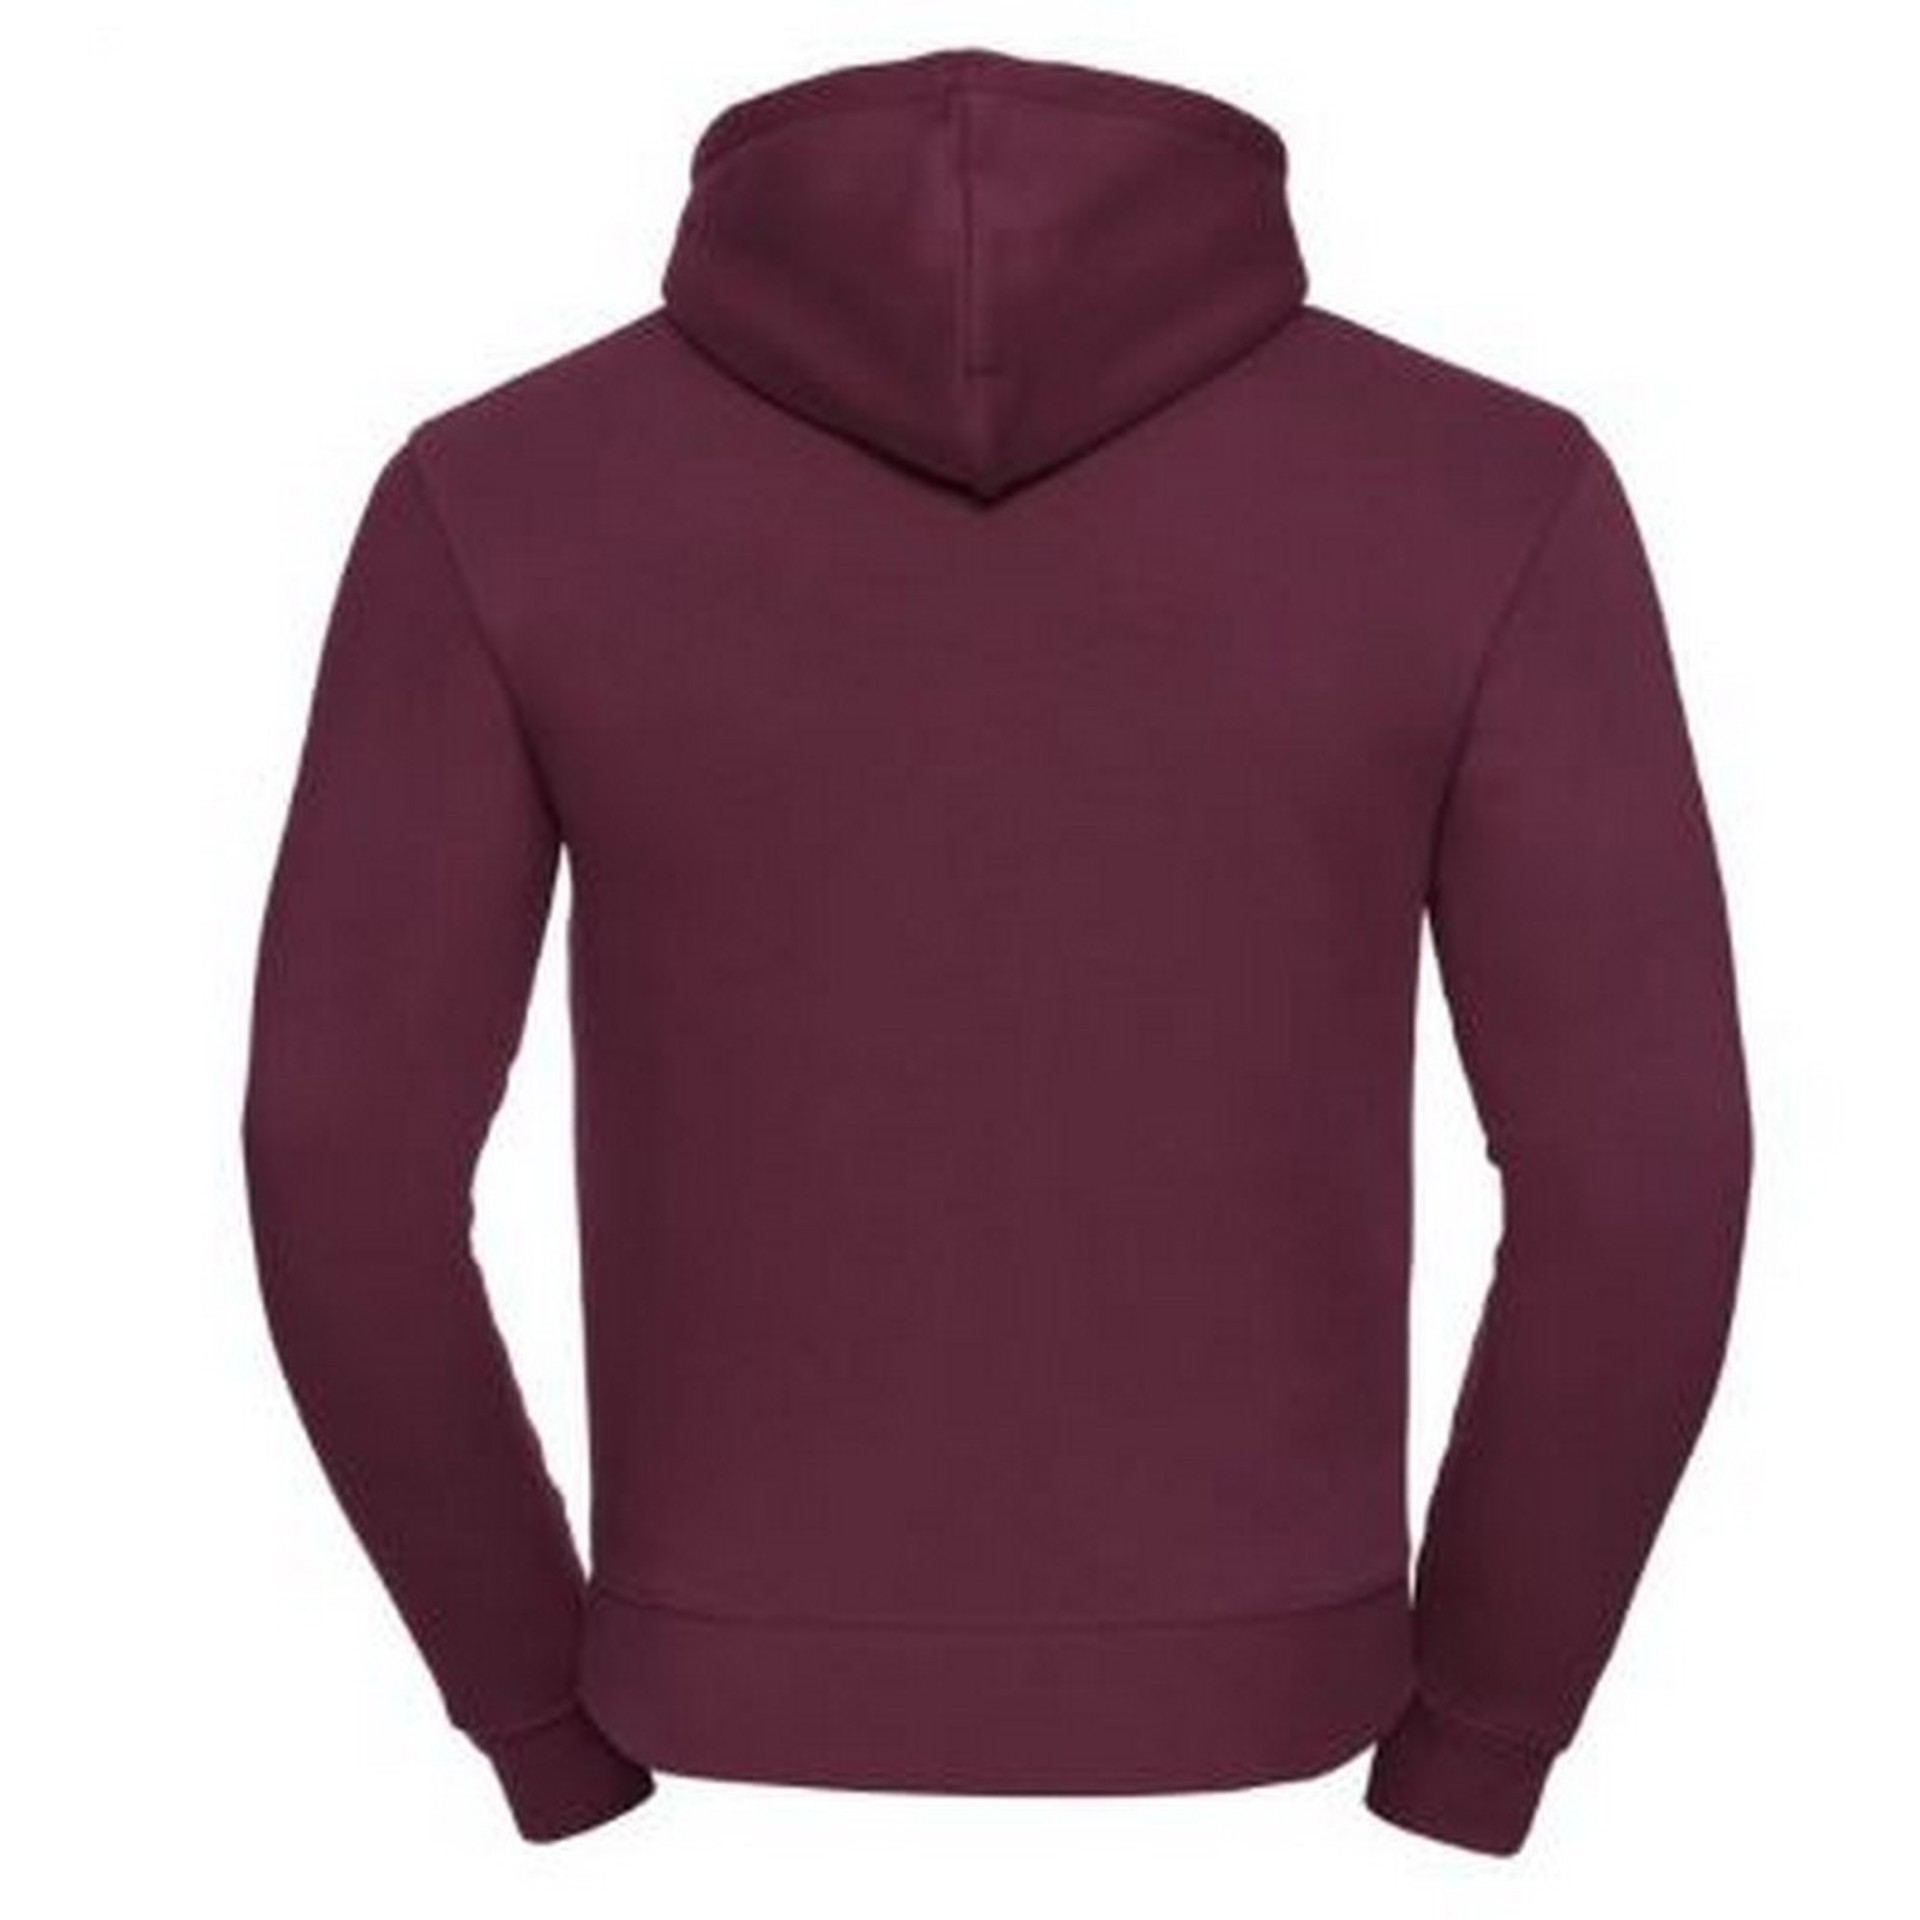 Russell Mens Authentic Hooded Sweatshirt / Hoodie Burgundy - För 285 SEK | Afound.com